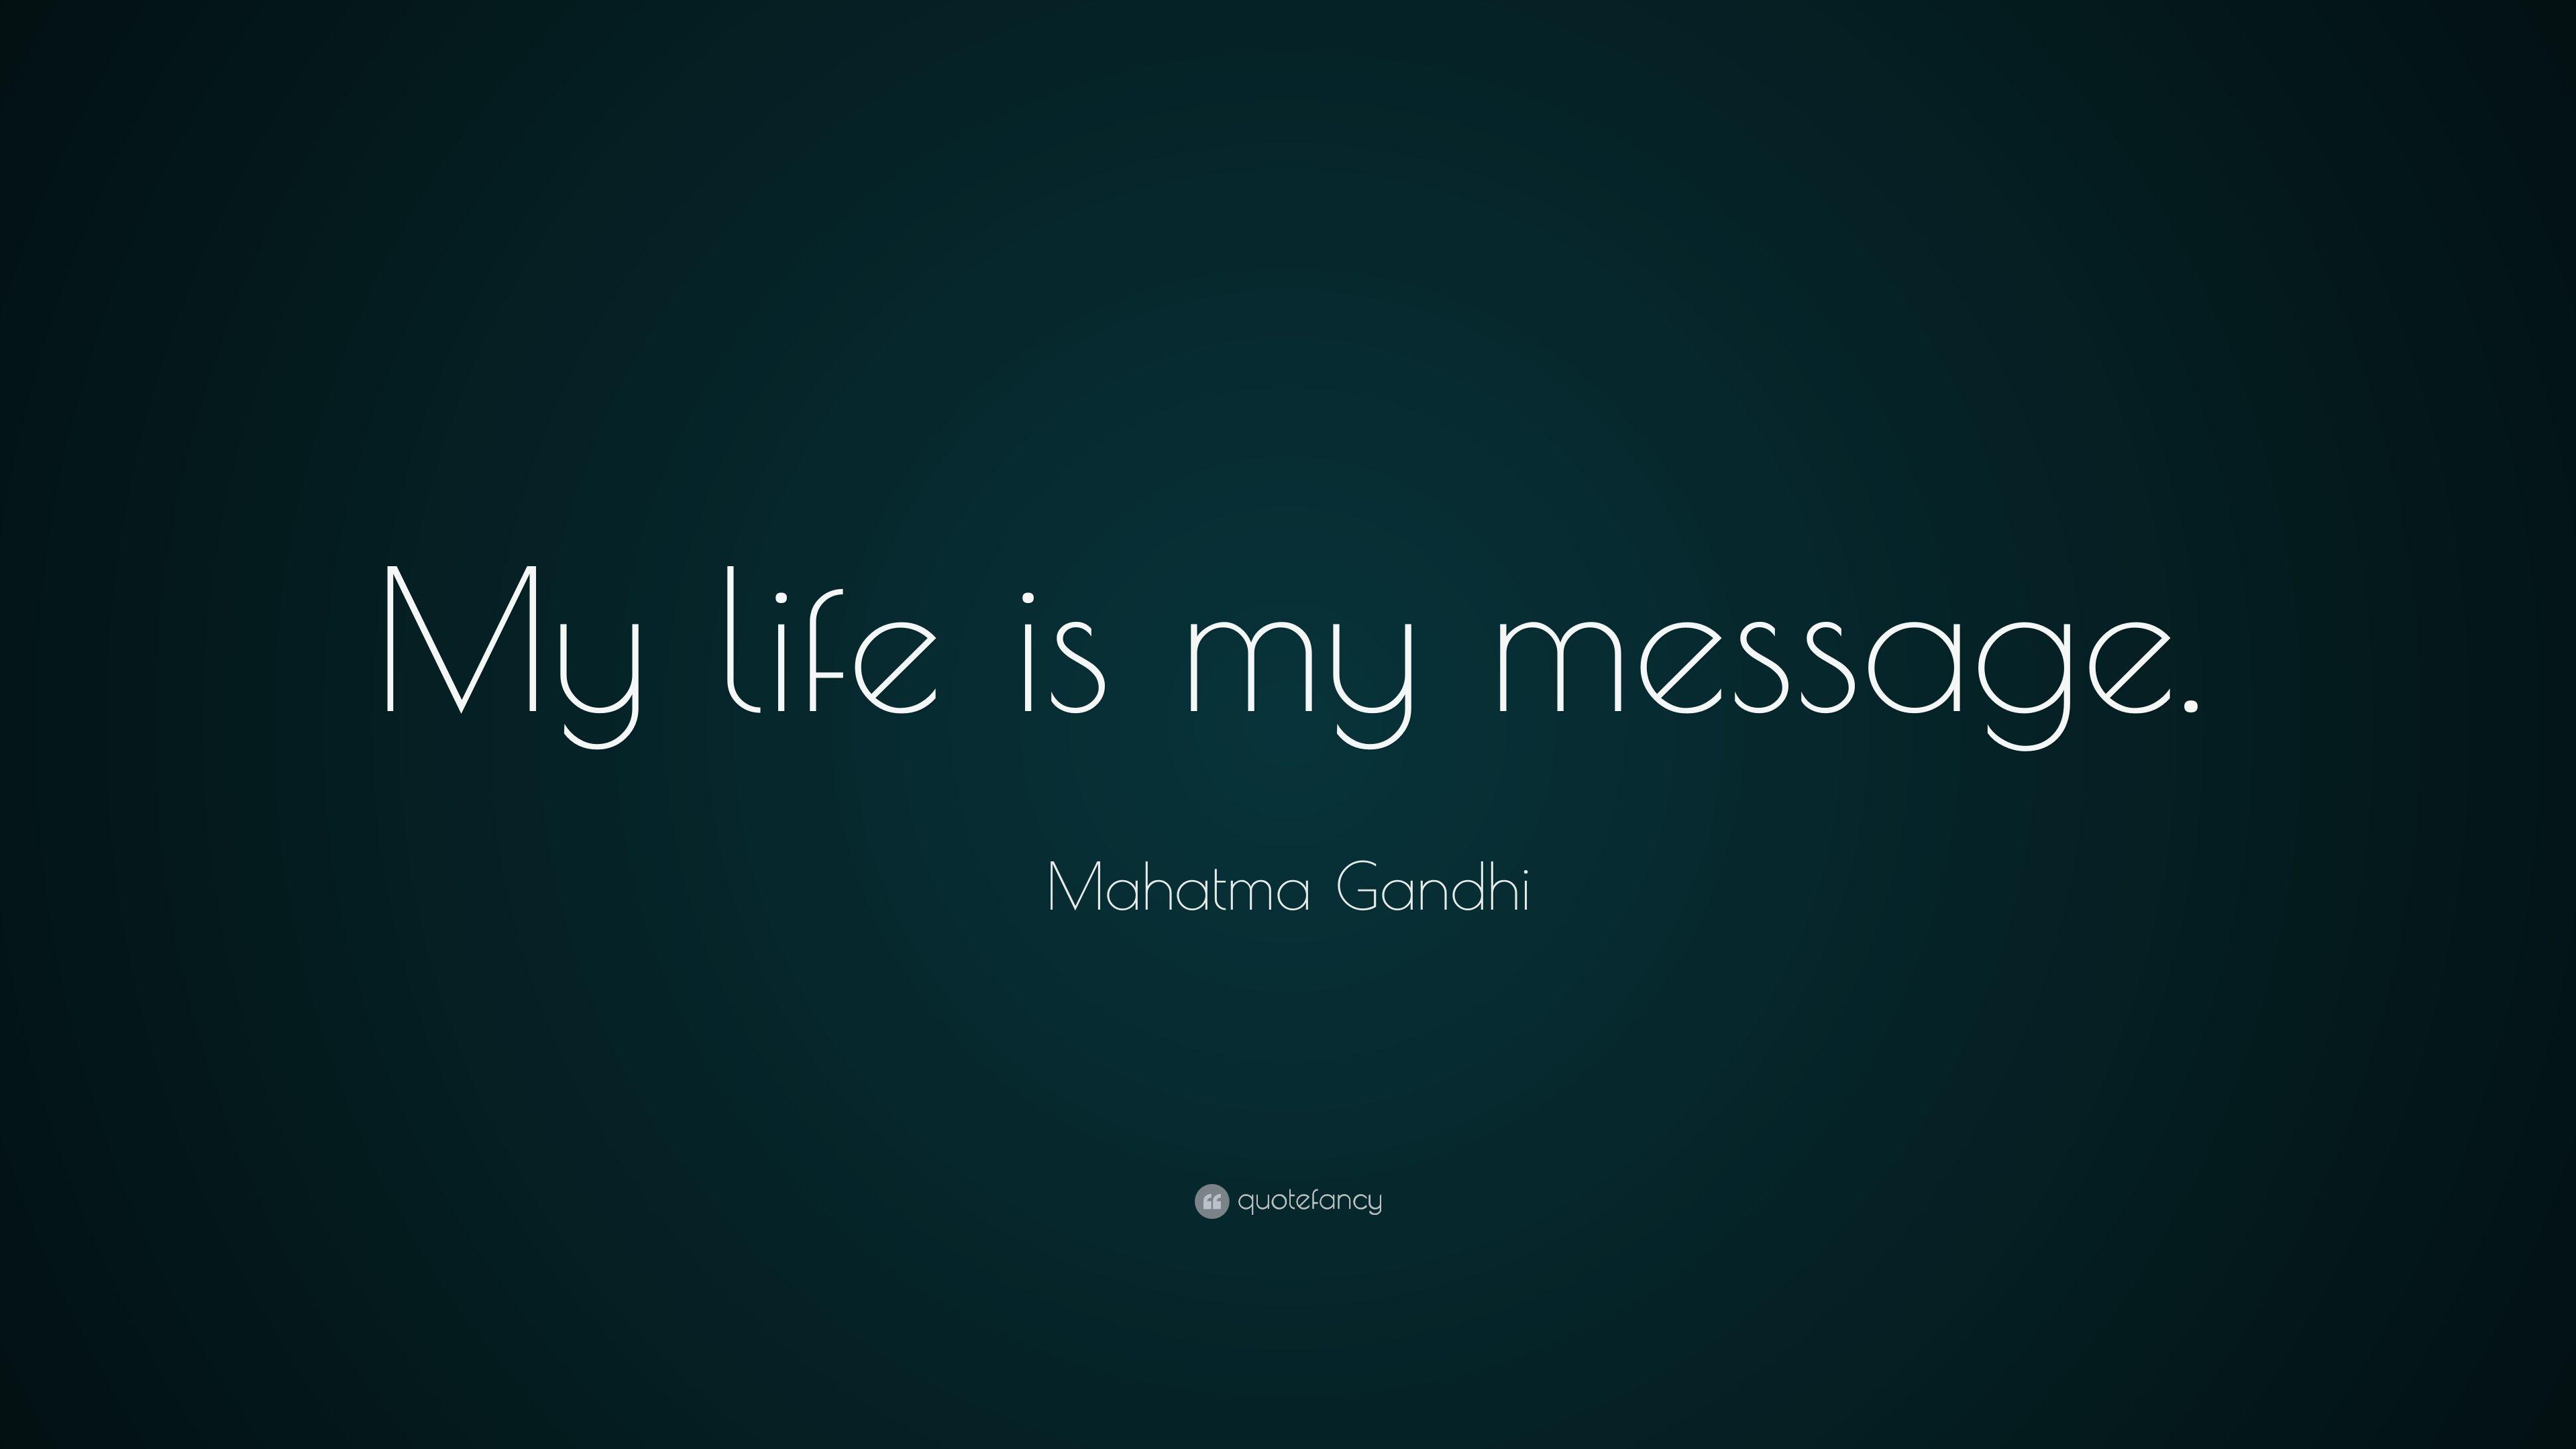 Mahatma Gandhi Quote: “My life is my message.” 20 wallpaper